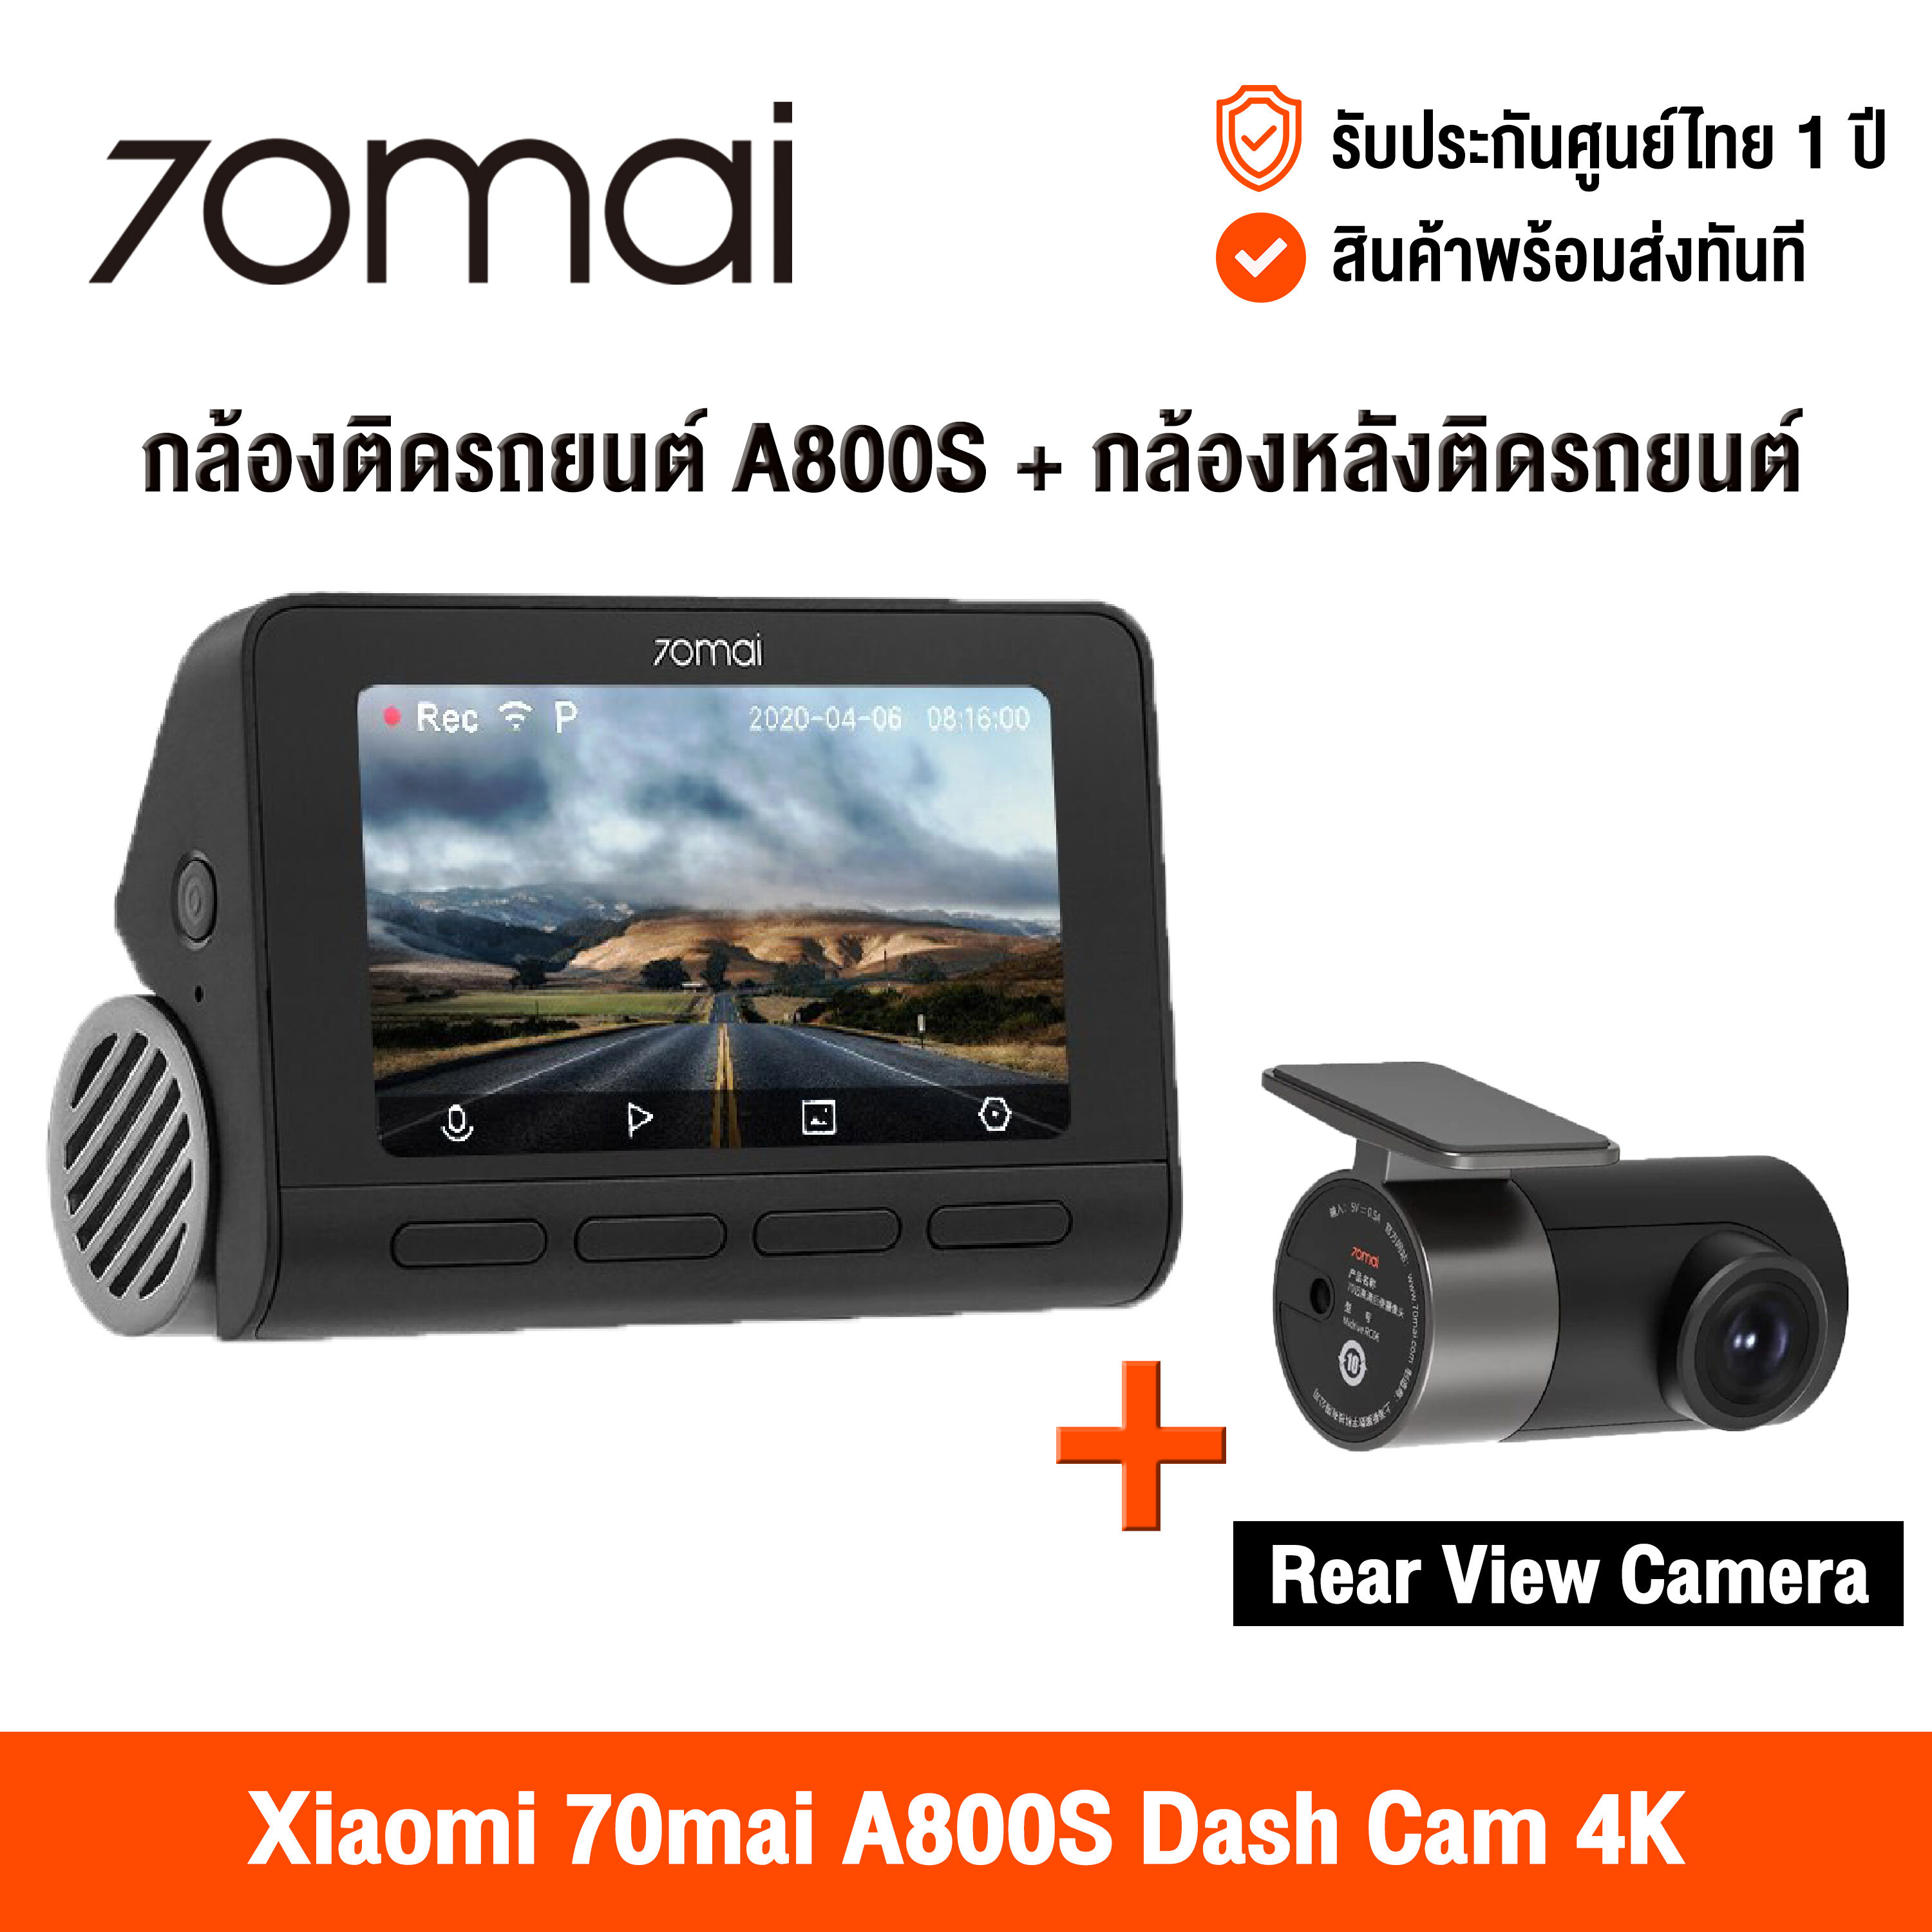 [ศูนย์ไทย] 70Mai A800s / A800 Dash Cam 4K Built in GPS (Global Version) เสี่ยวหมี่ กล้องติดรถยนต์ ภาพคมชัด 4K GPS ในตัว เชื่อมต่อด้วยแอพและ Wifi